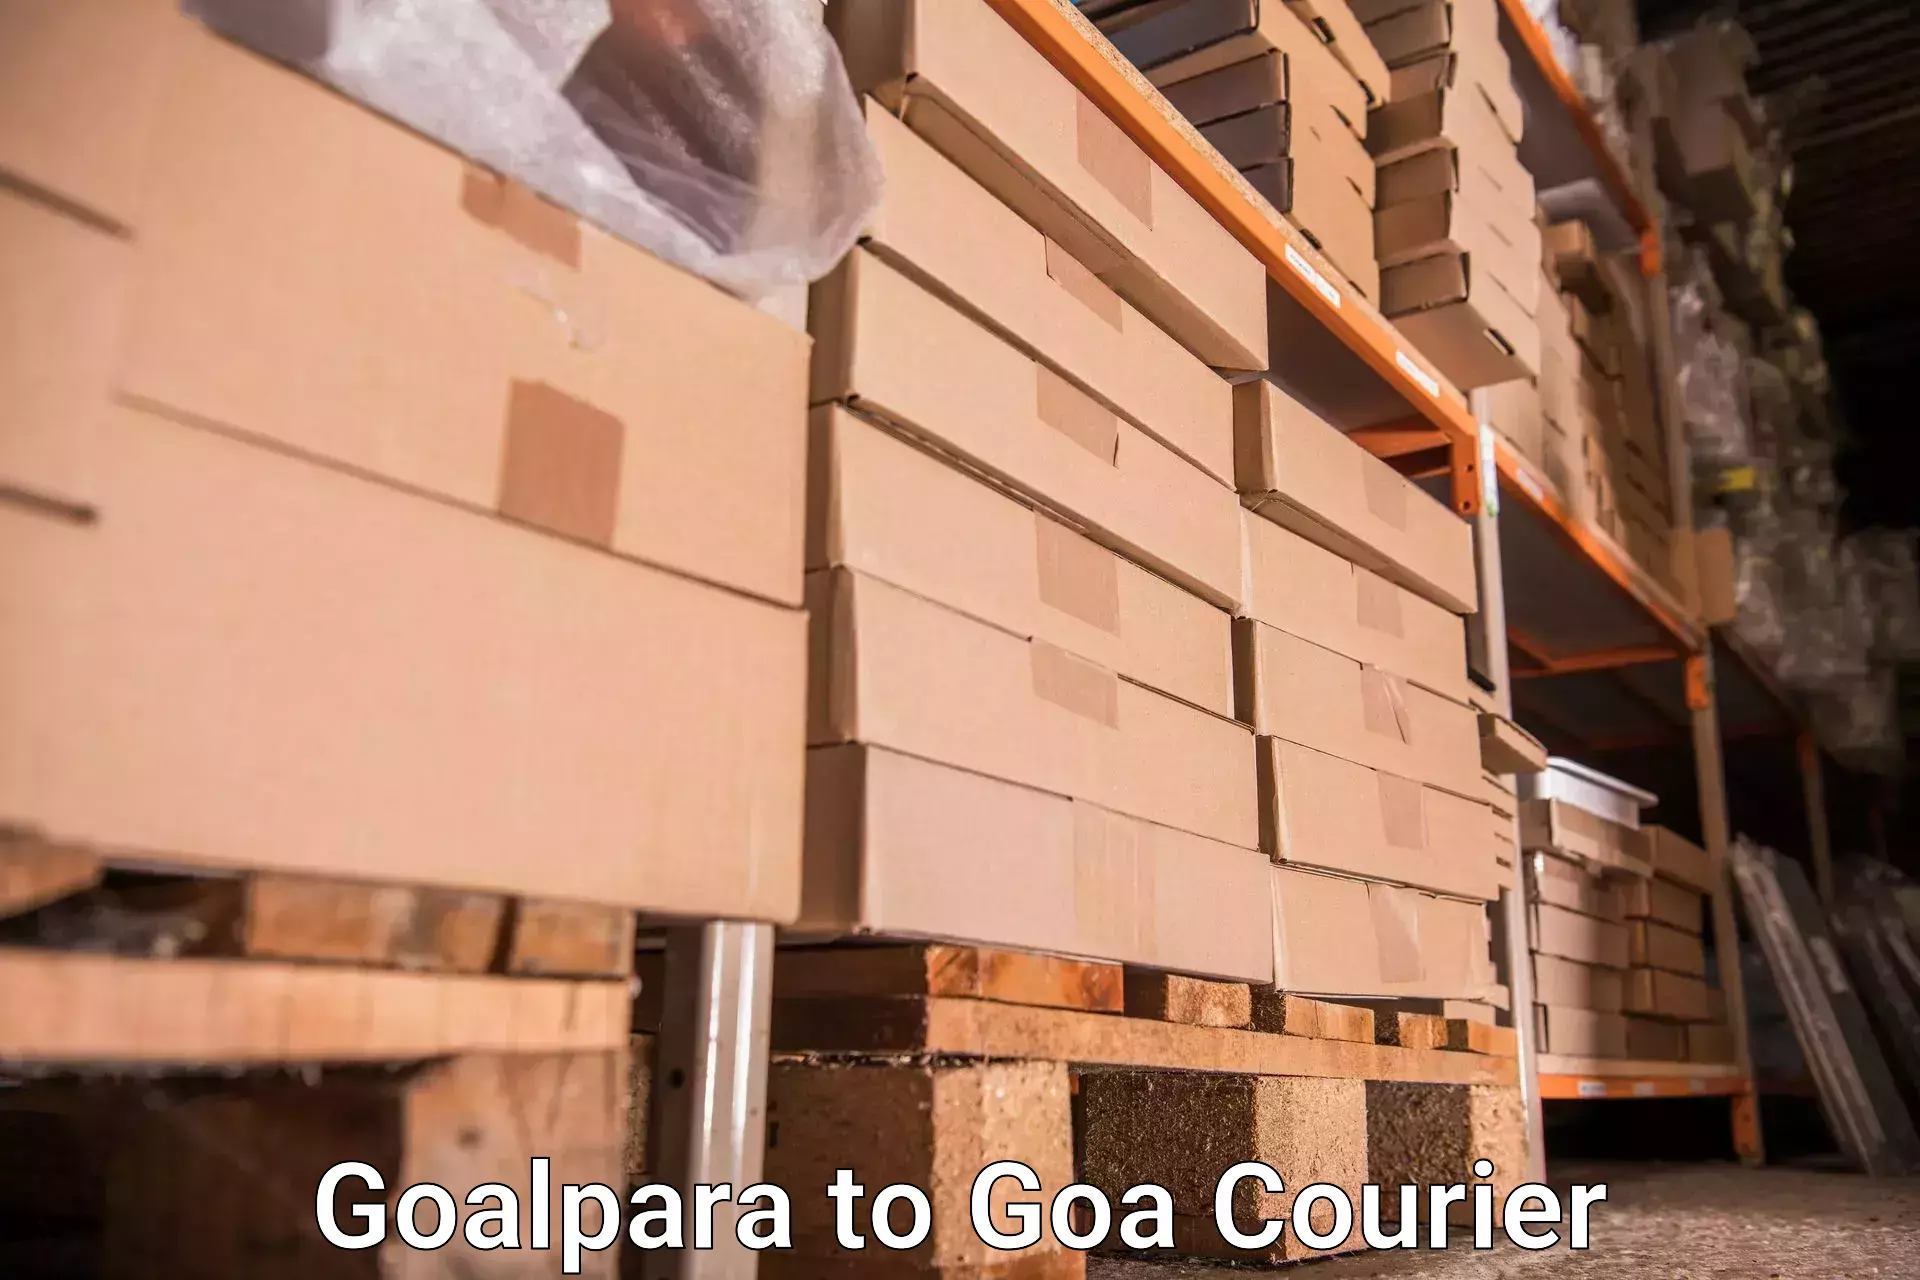 Baggage transport network Goalpara to Mormugao Port